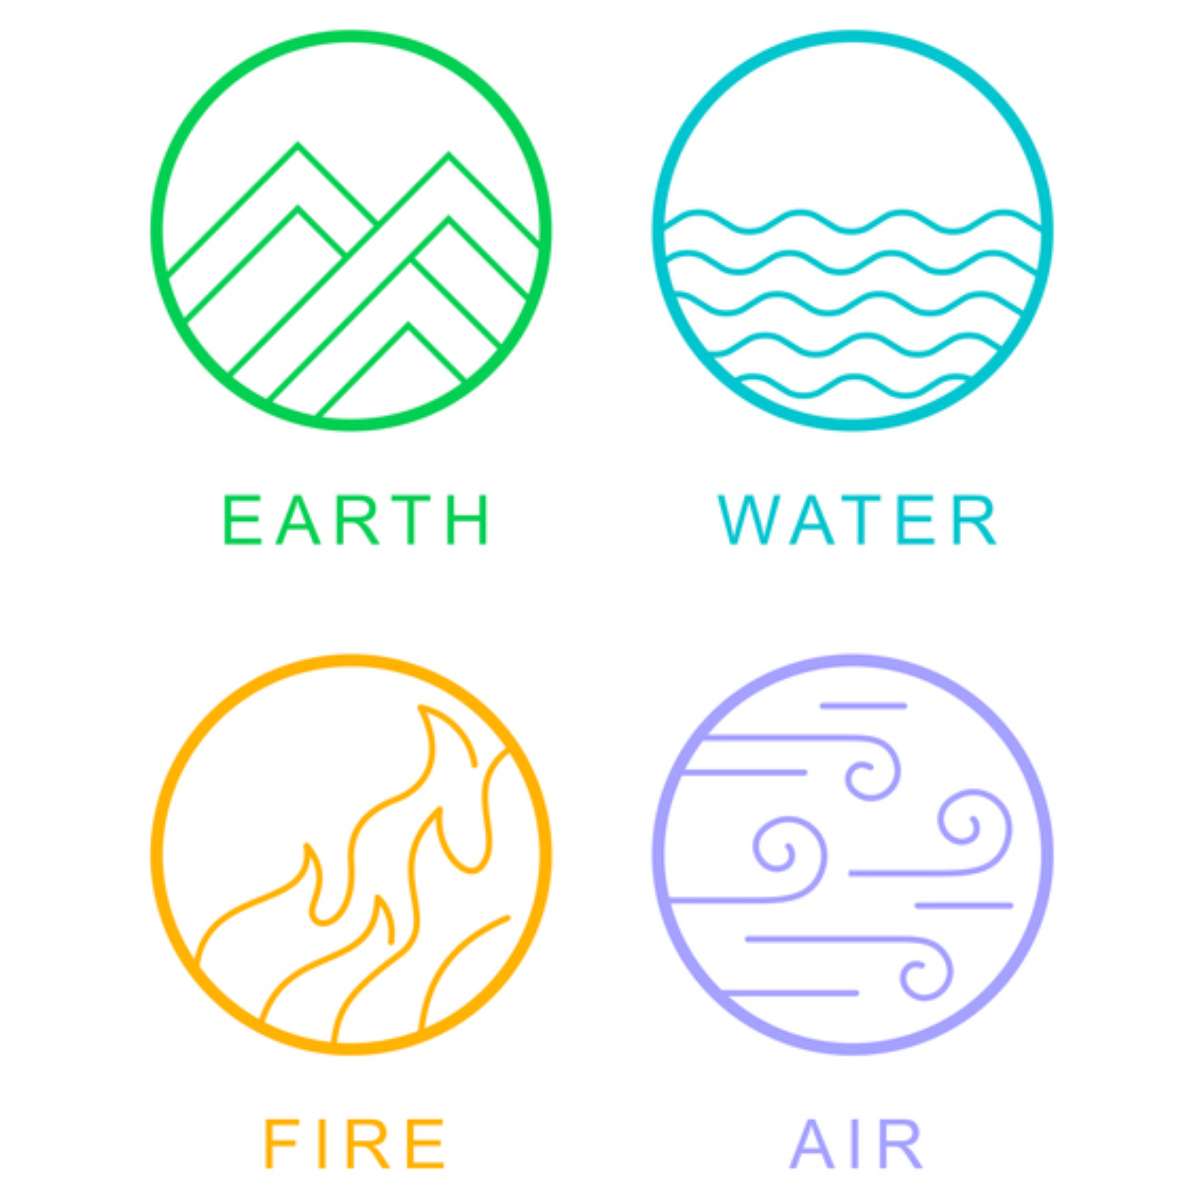 Quatro elementos natureza fogo ar terra e água dourado 4 símbolos da vida